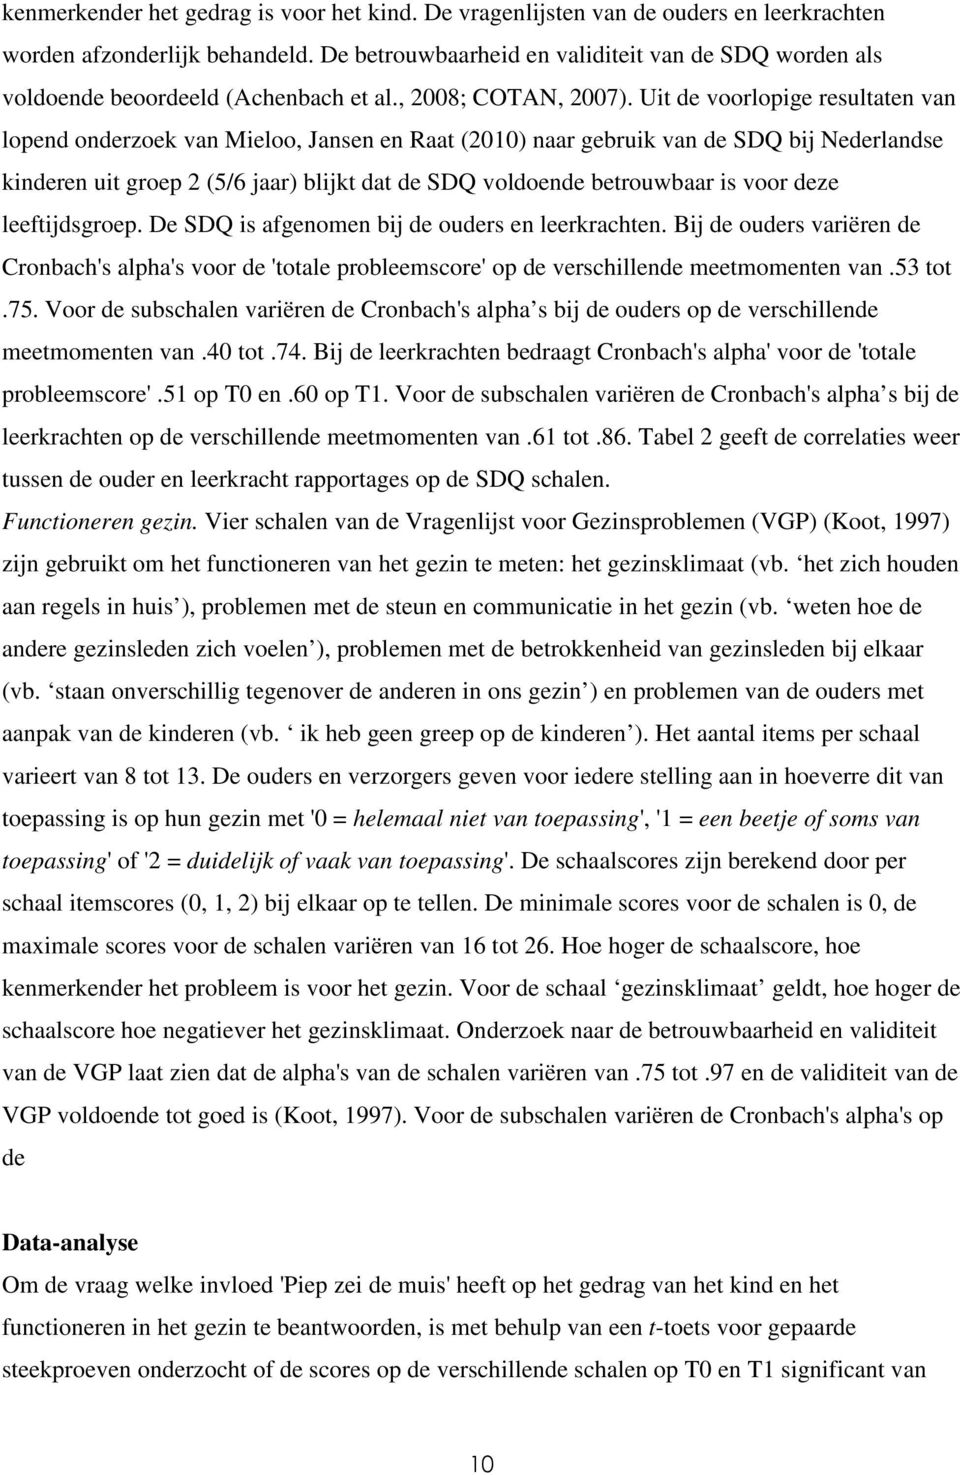 Uit de voorlopige resultaten van lopend onderzoek van Mieloo, Jansen en Raat (2010) naar gebruik van de SDQ bij Nederlandse kinderen uit groep 2 (5/6 jaar) blijkt dat de SDQ voldoende betrouwbaar is